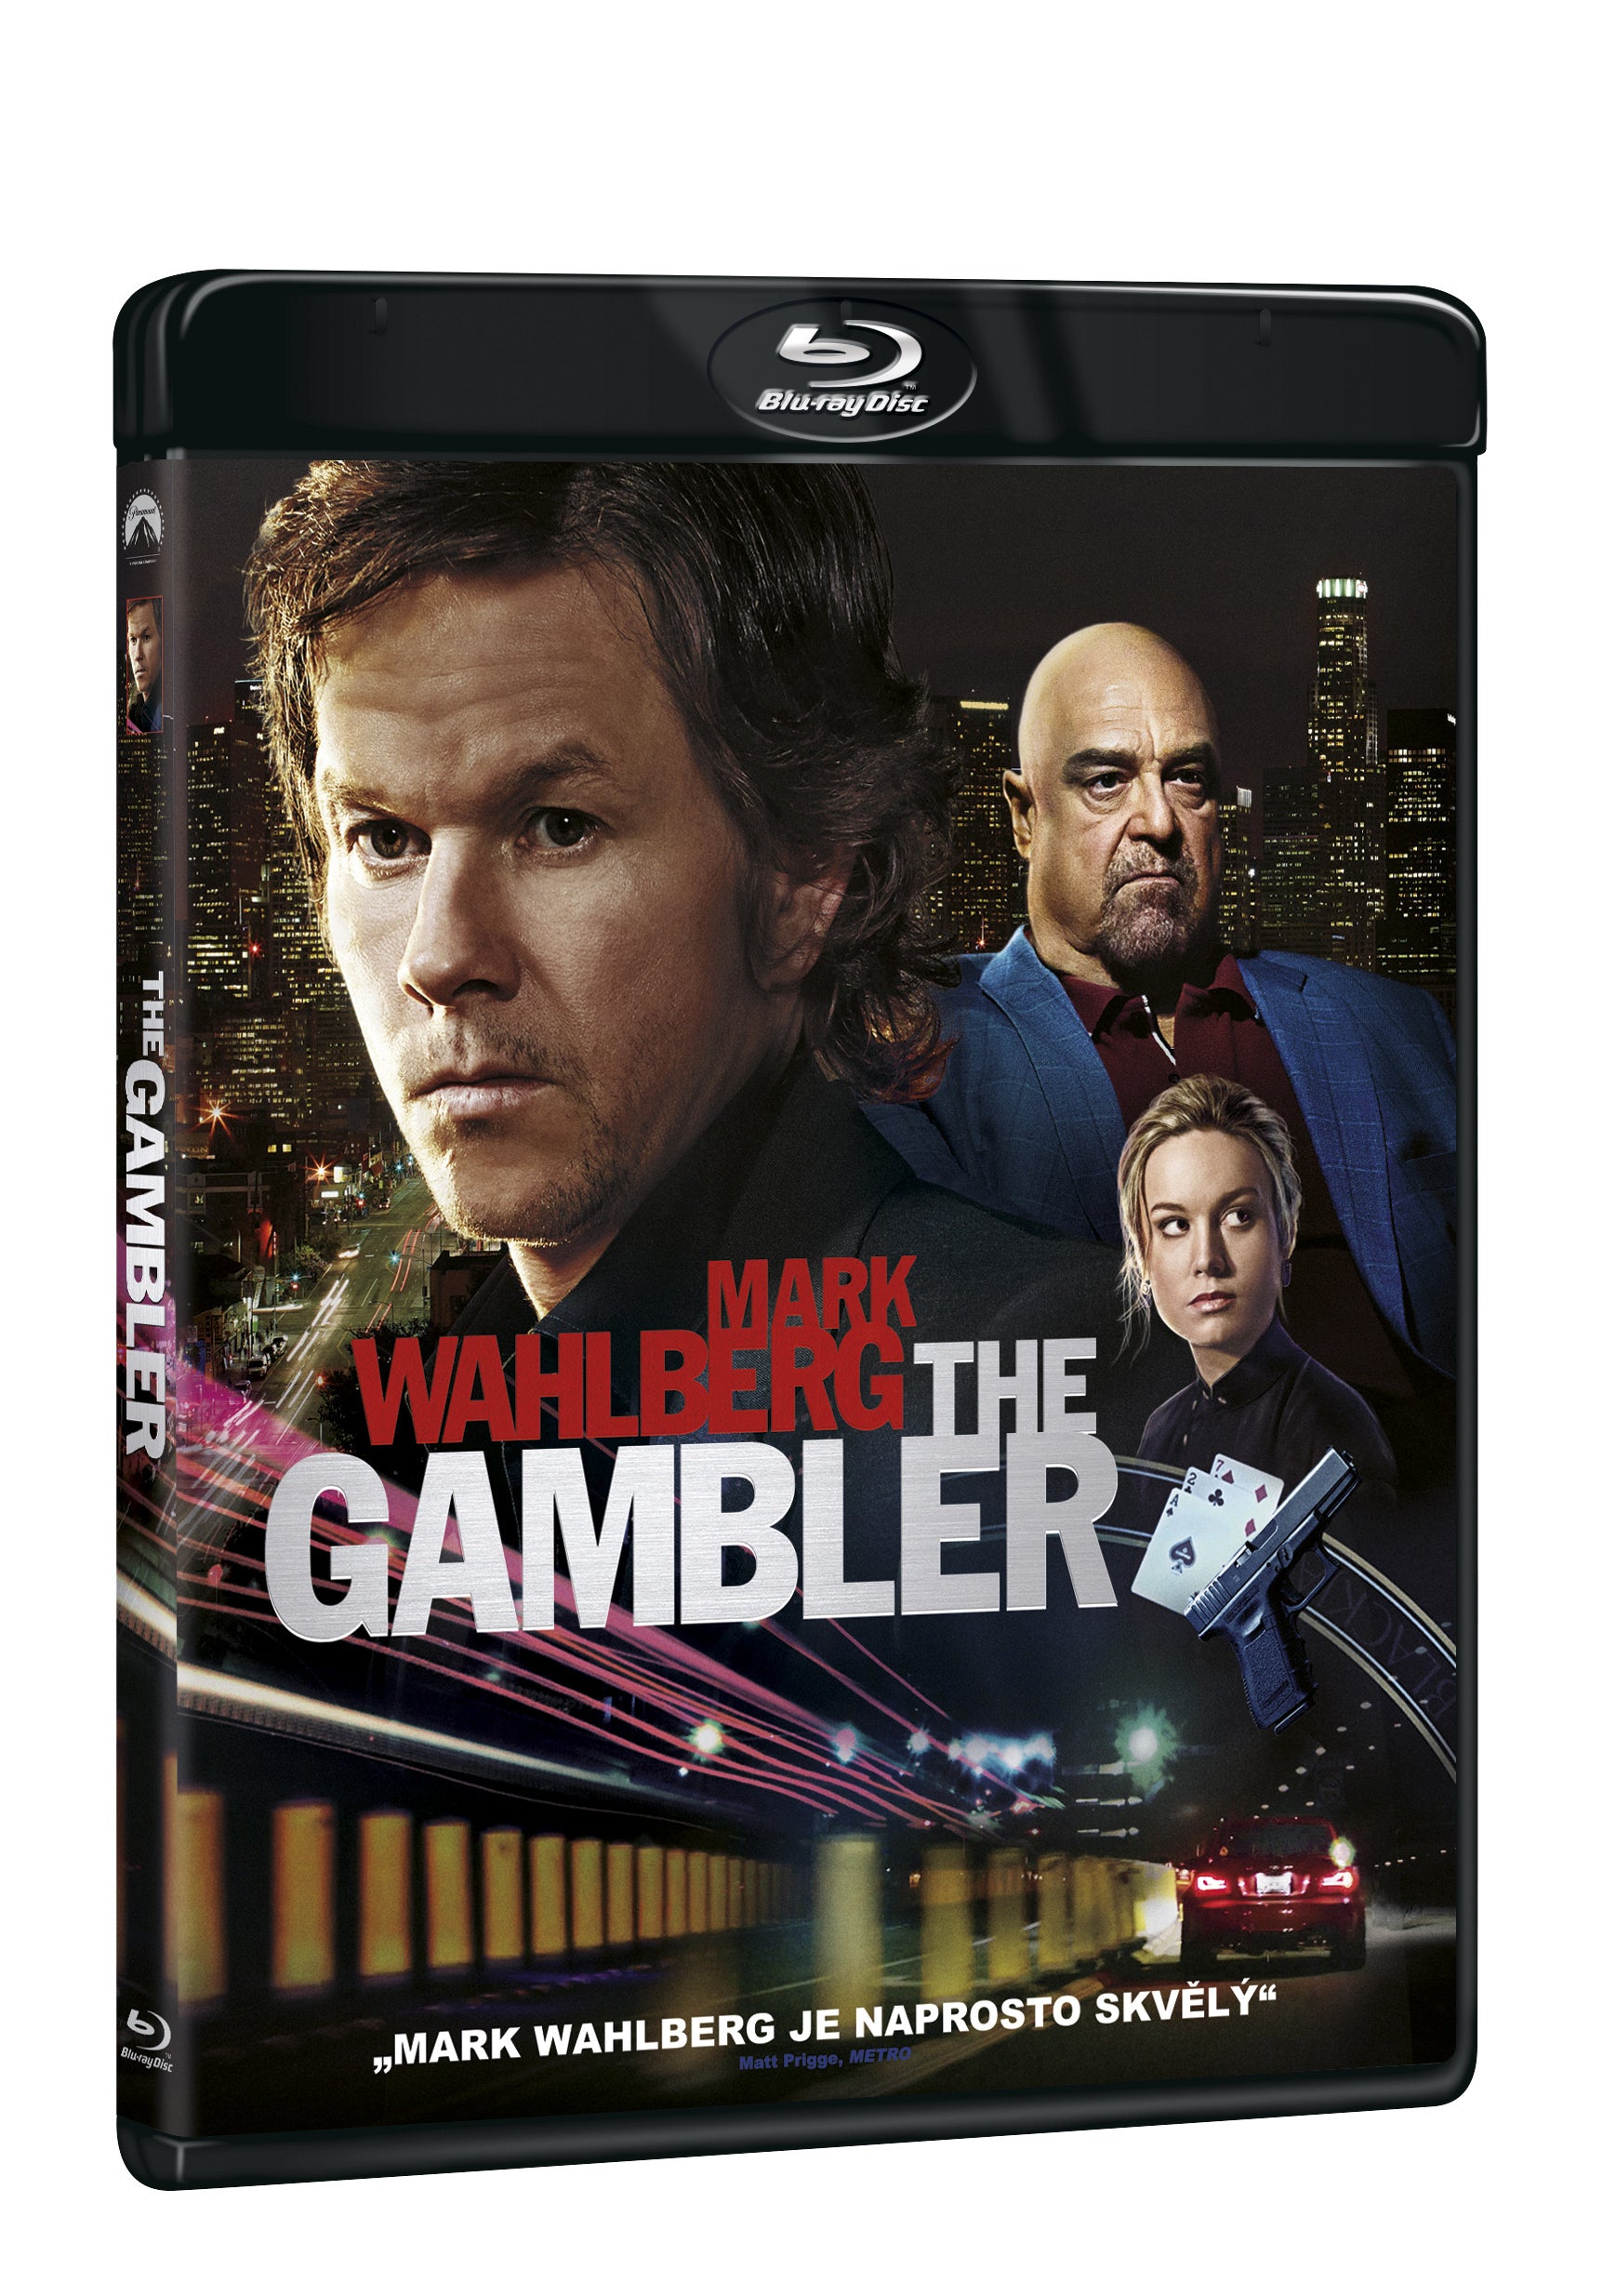 The Gambler BD / The Gambler - Czech version